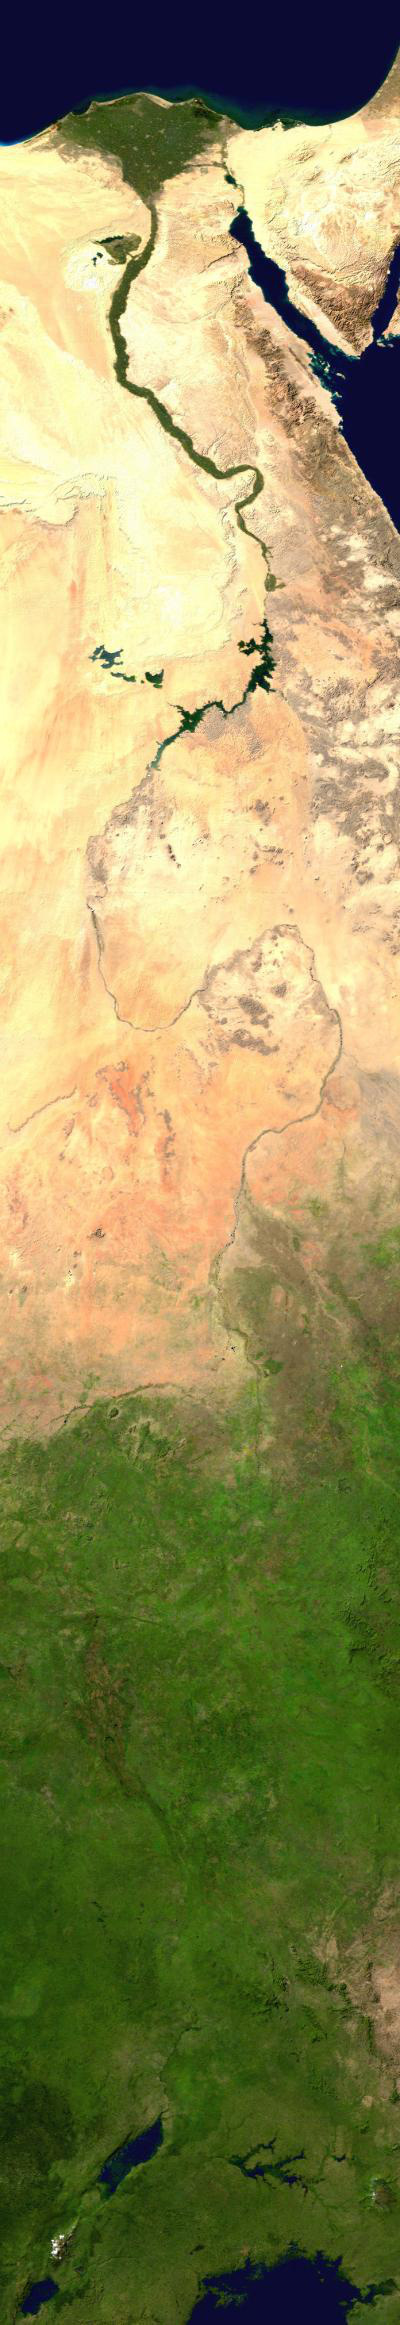 Khám phá bất ngờ: Sông Nile 30 triệu năm tuổi có thể trở thành công cụ nghiên cứu địa chất đắc lực cho khoa học - Ảnh 1.